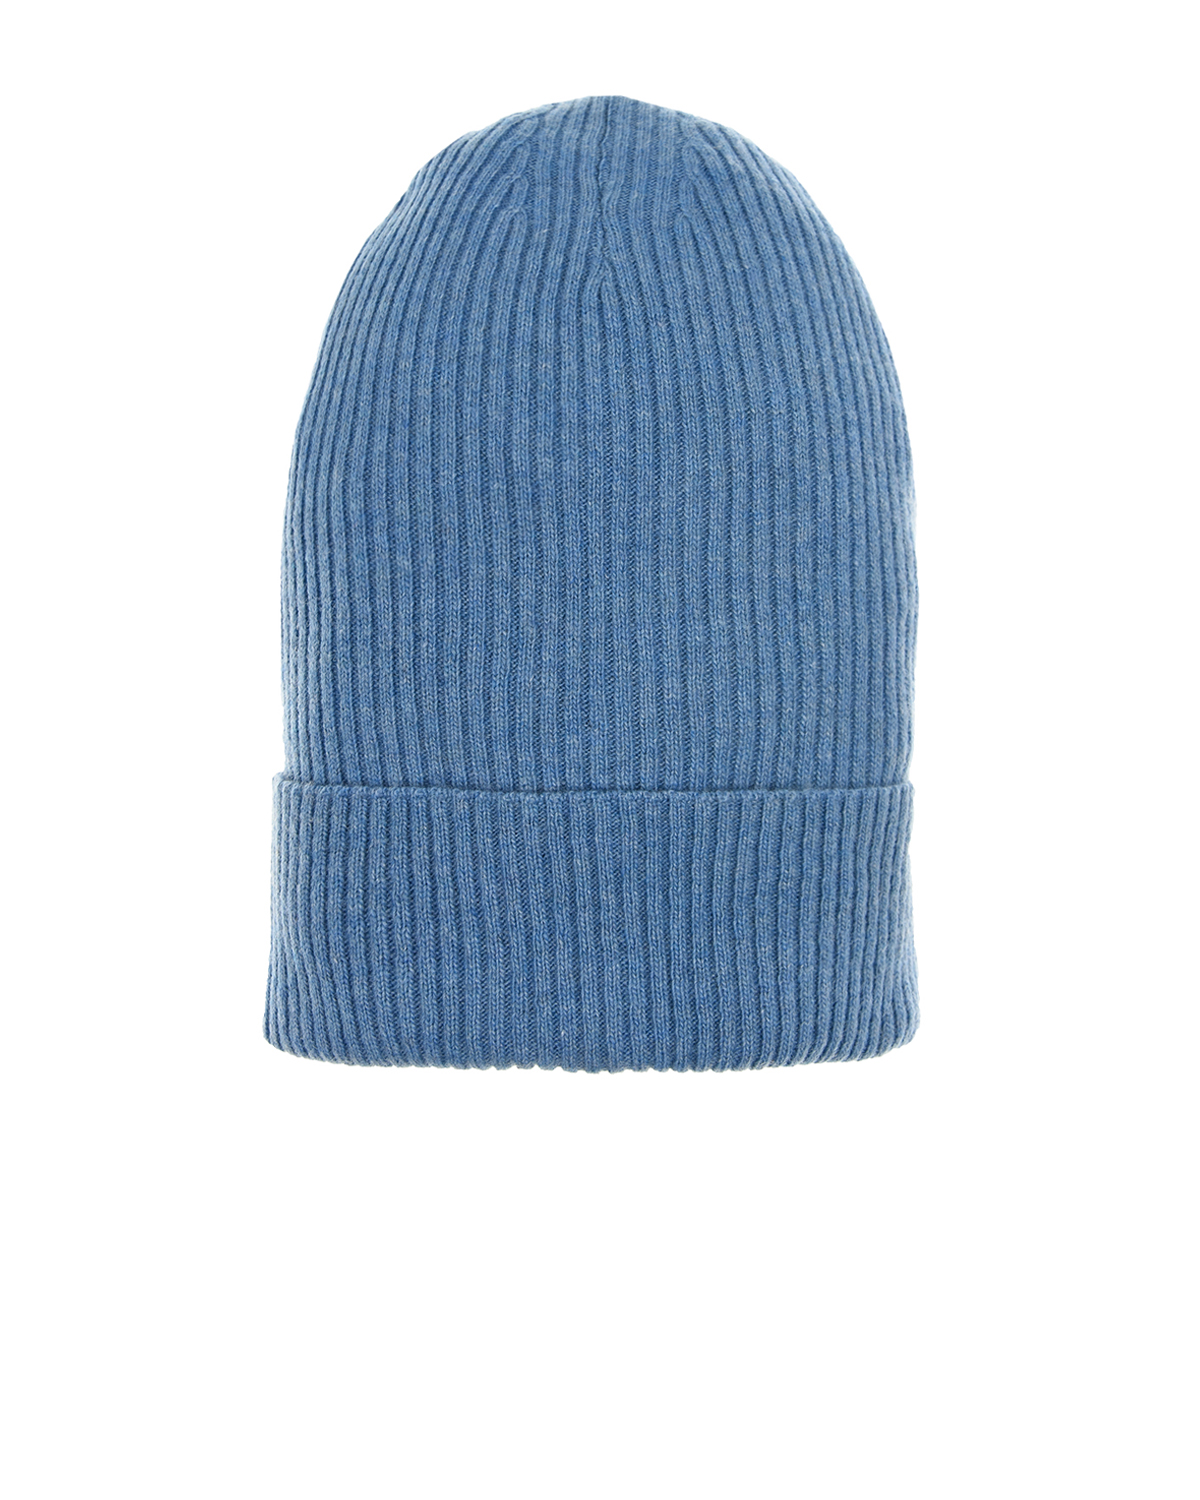 Голубая шапка бини Pietro Brunelli, размер unica, цвет голубой